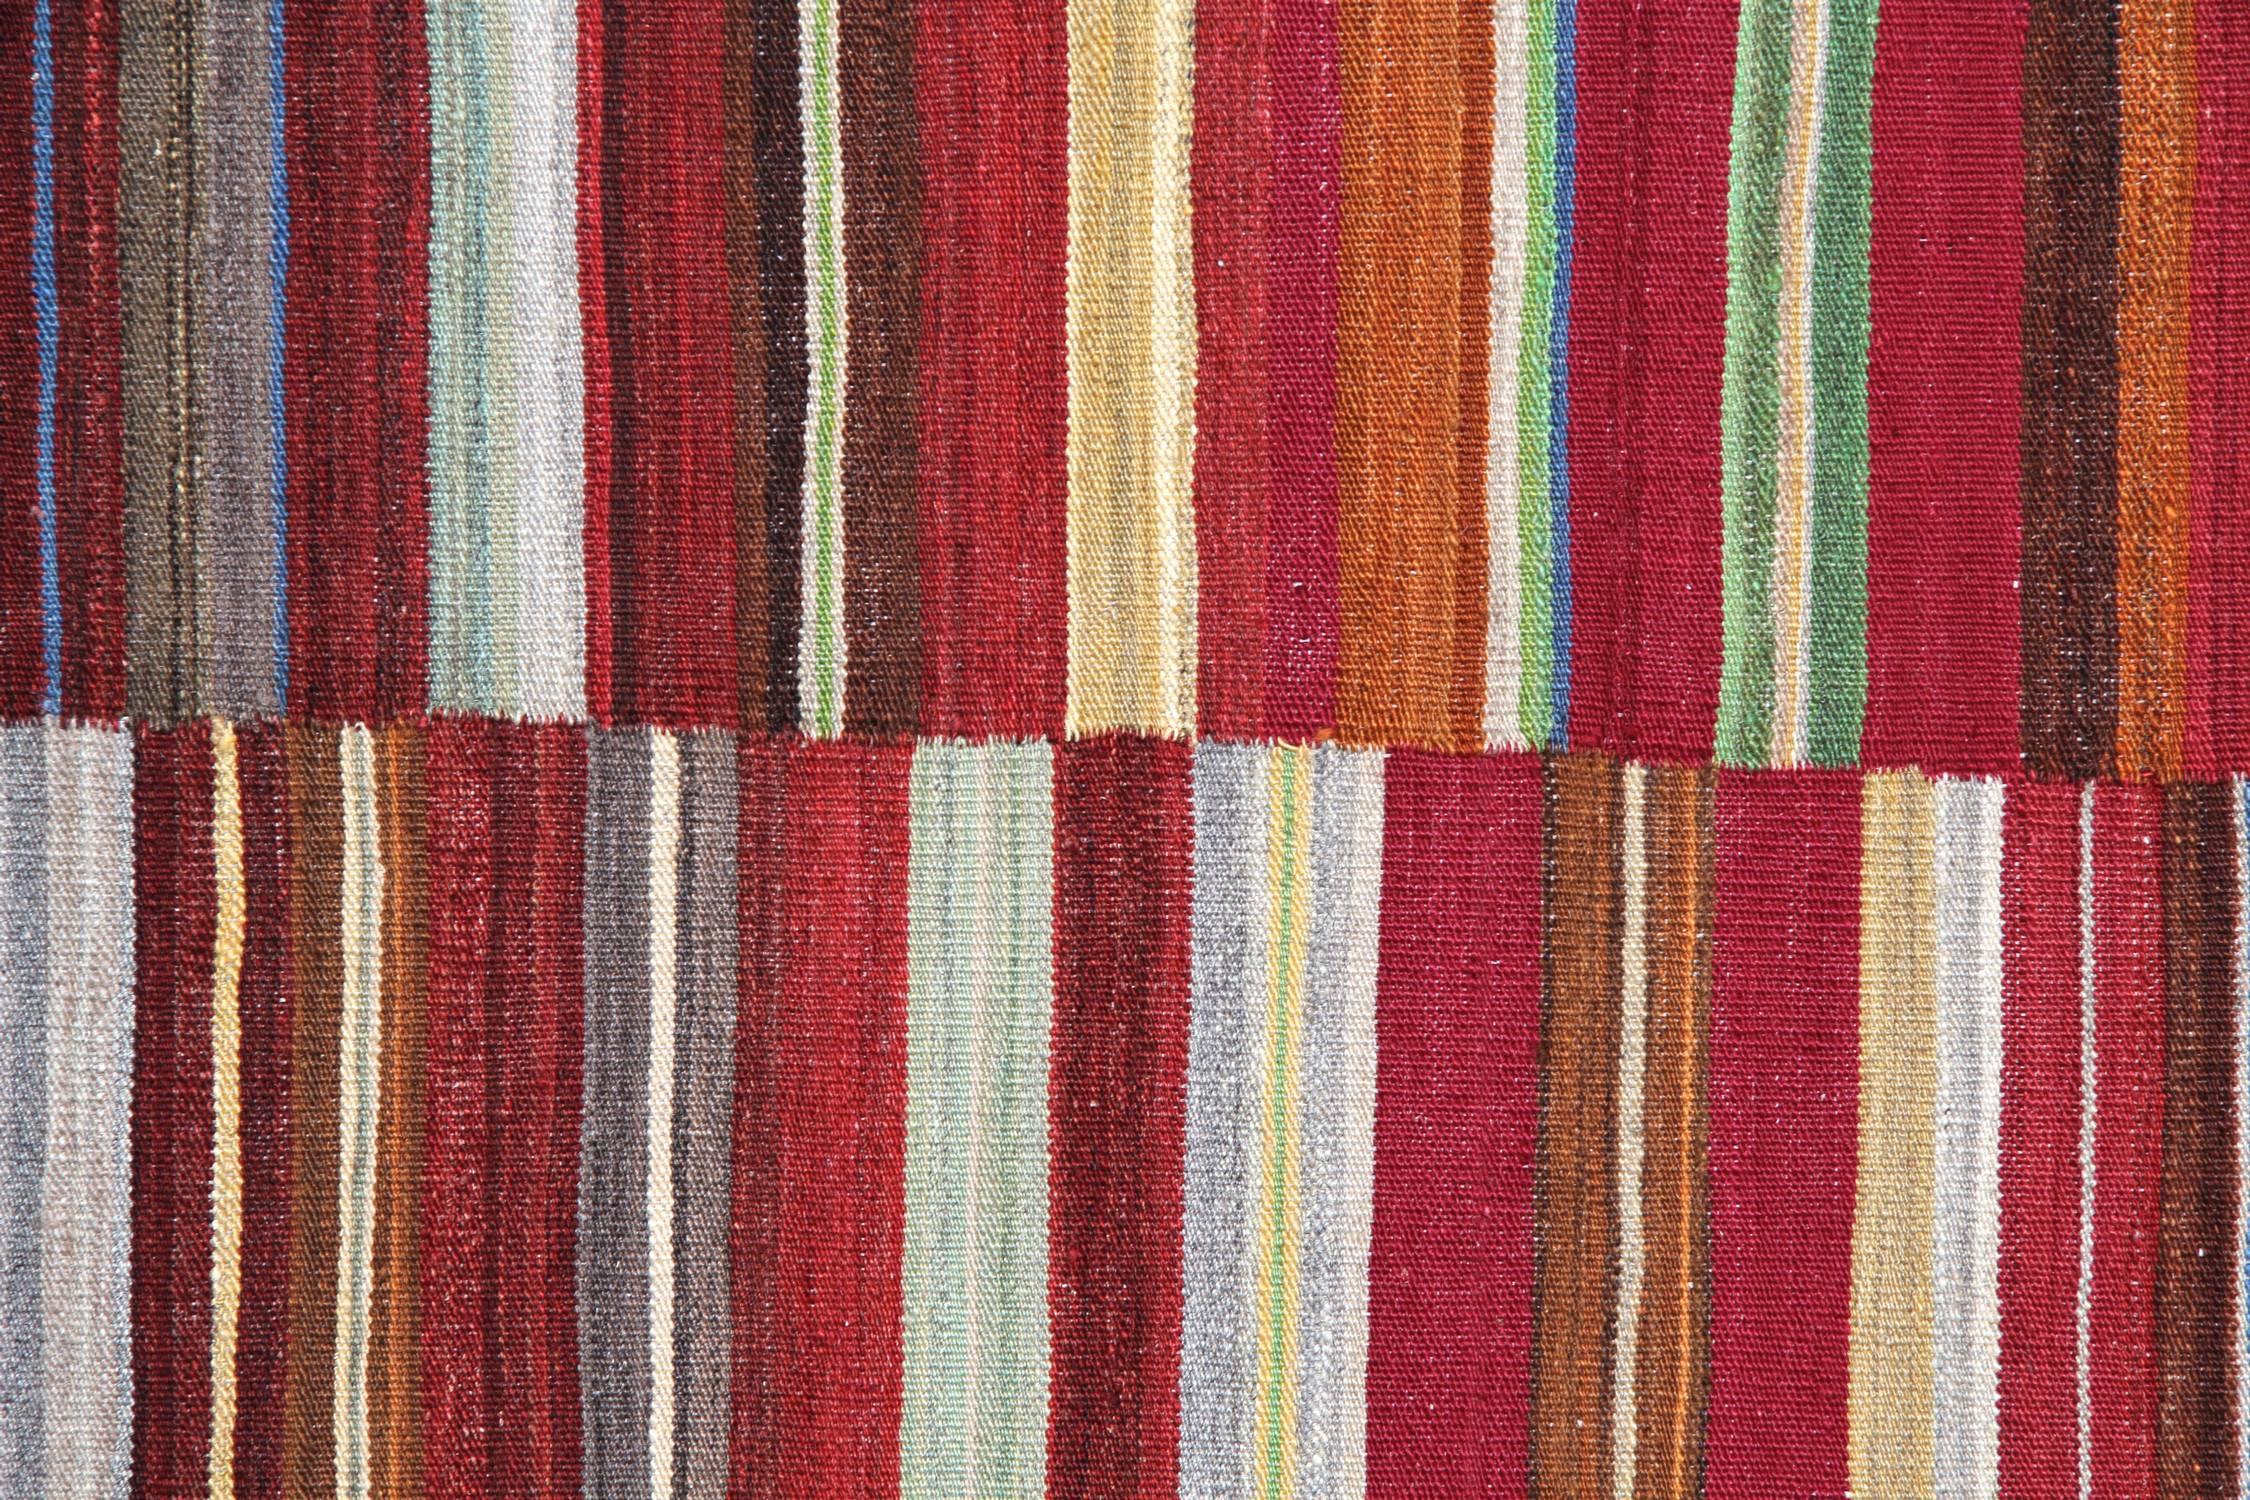 Vegetable Dyed Afghan Rugs, Kilim Rugs, Modern Rugs, Carpet from Afghanistan